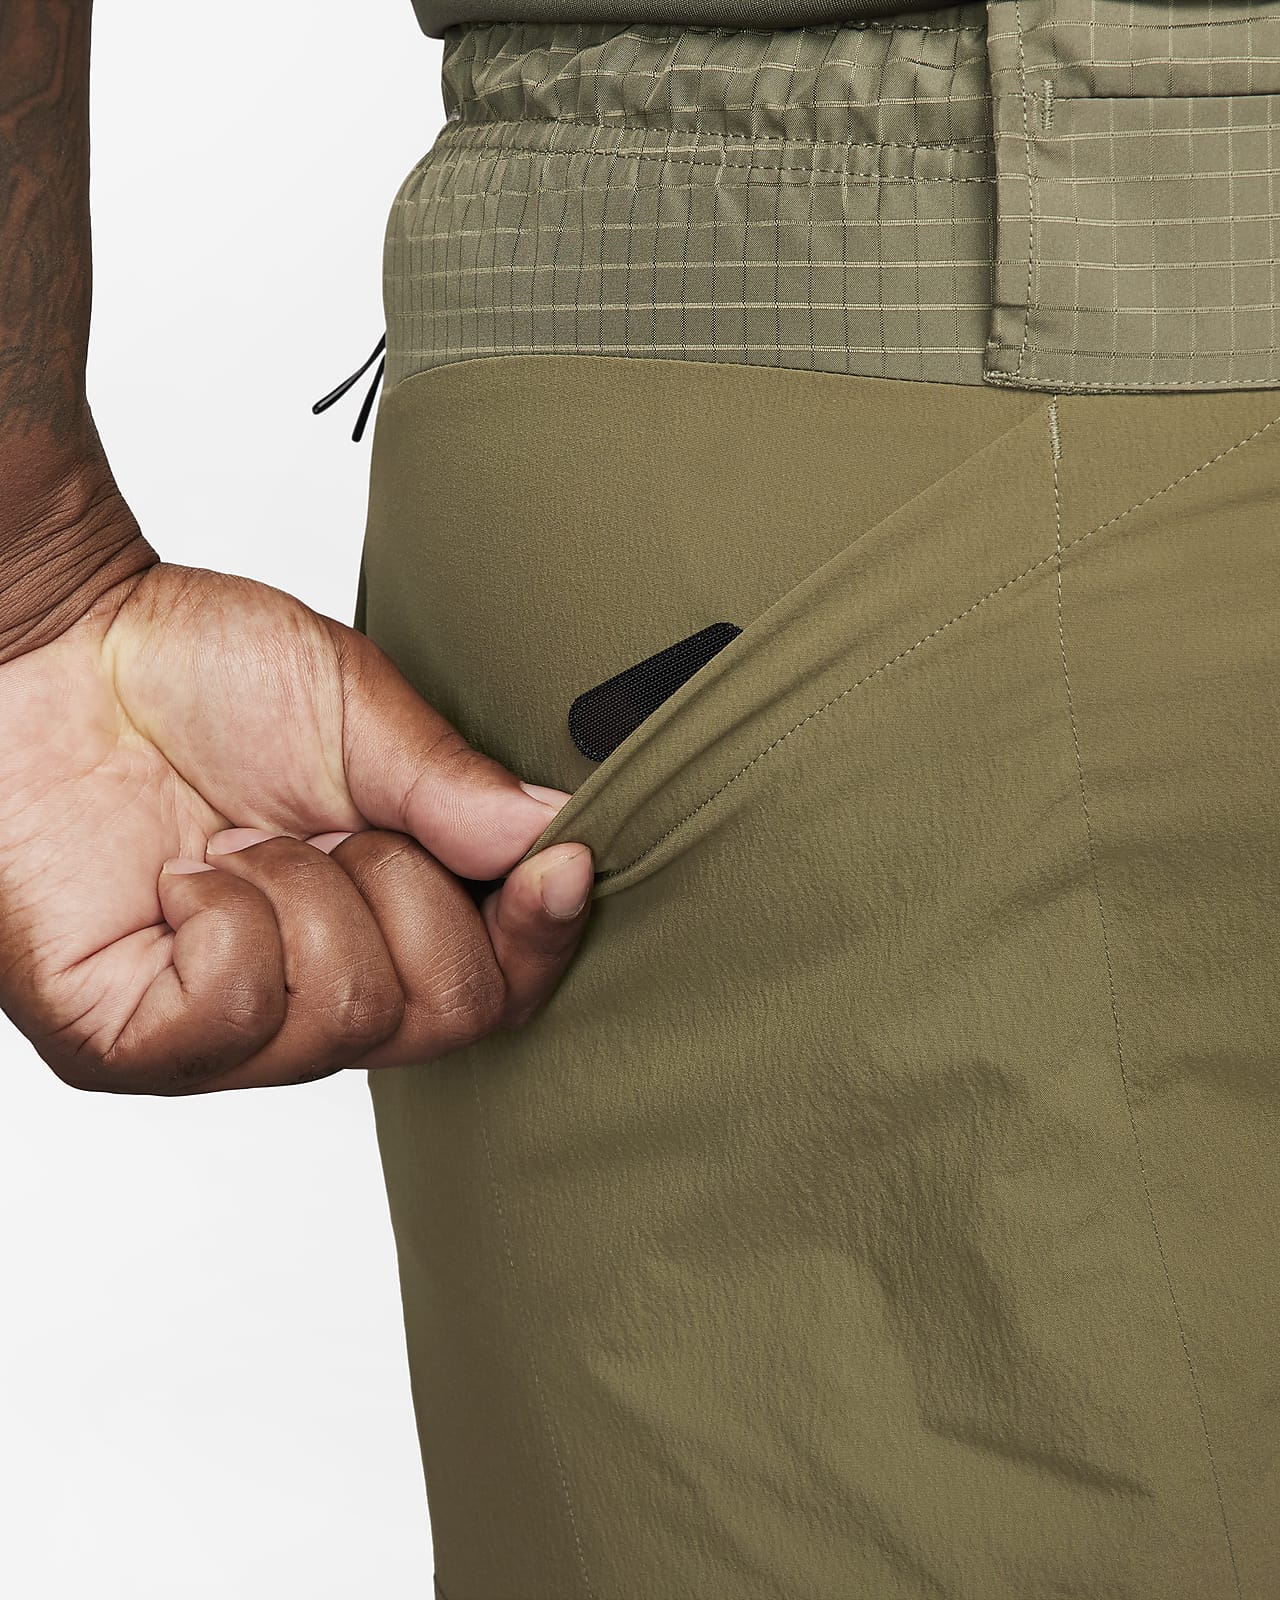 Nike Men's Dri-FIT APS Woven Pants